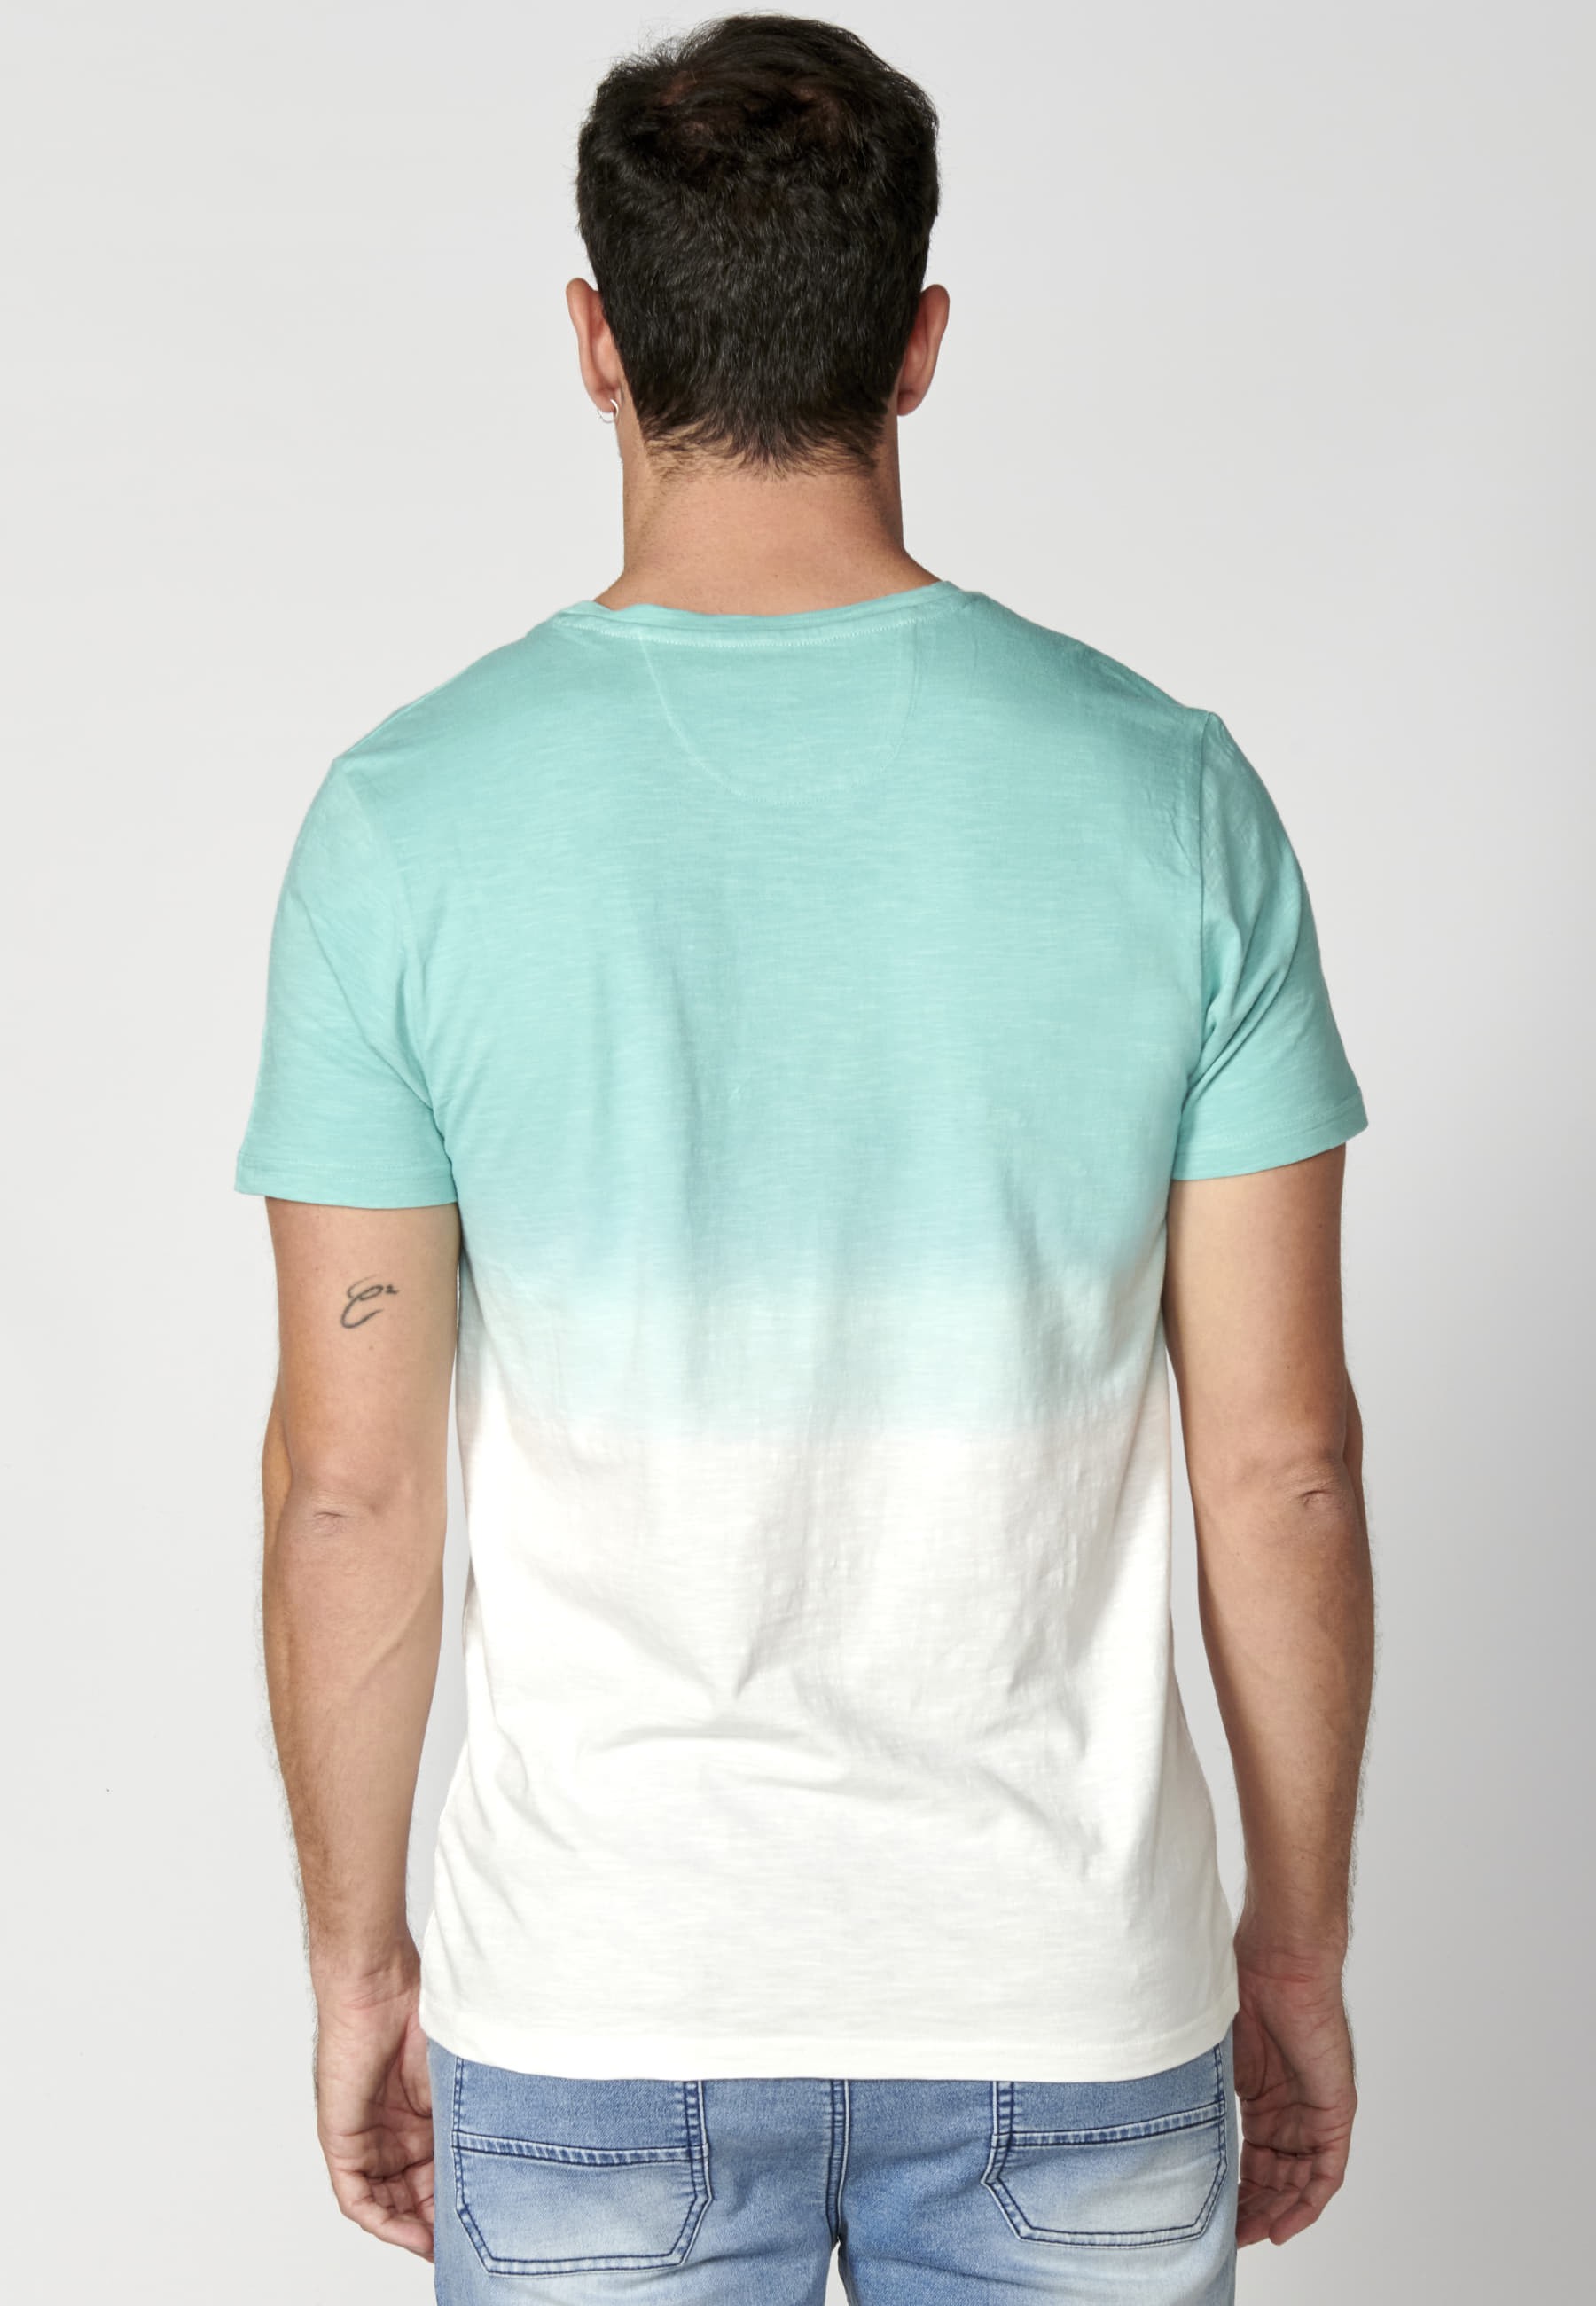 Men's Mint Color Cotton Short Sleeve T-shirt 4